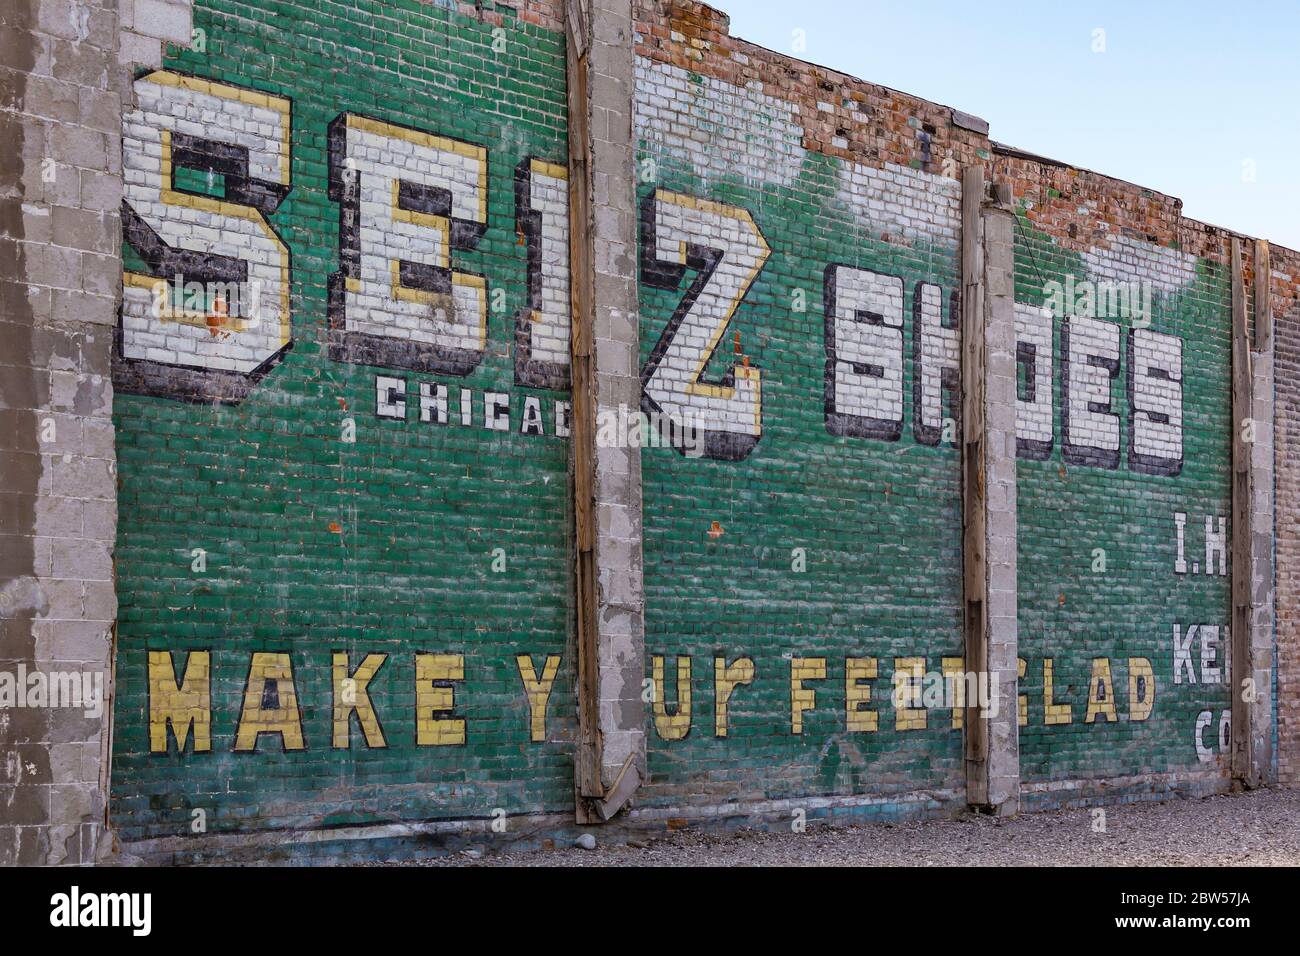 Werbeschild für Seiz Shoes an einer Ziegelwand in Fallon, Nevada, USA [Keine Eigentumsfreigabe; nur für redaktionelle Lizenzierung verfügbar] Stockfoto